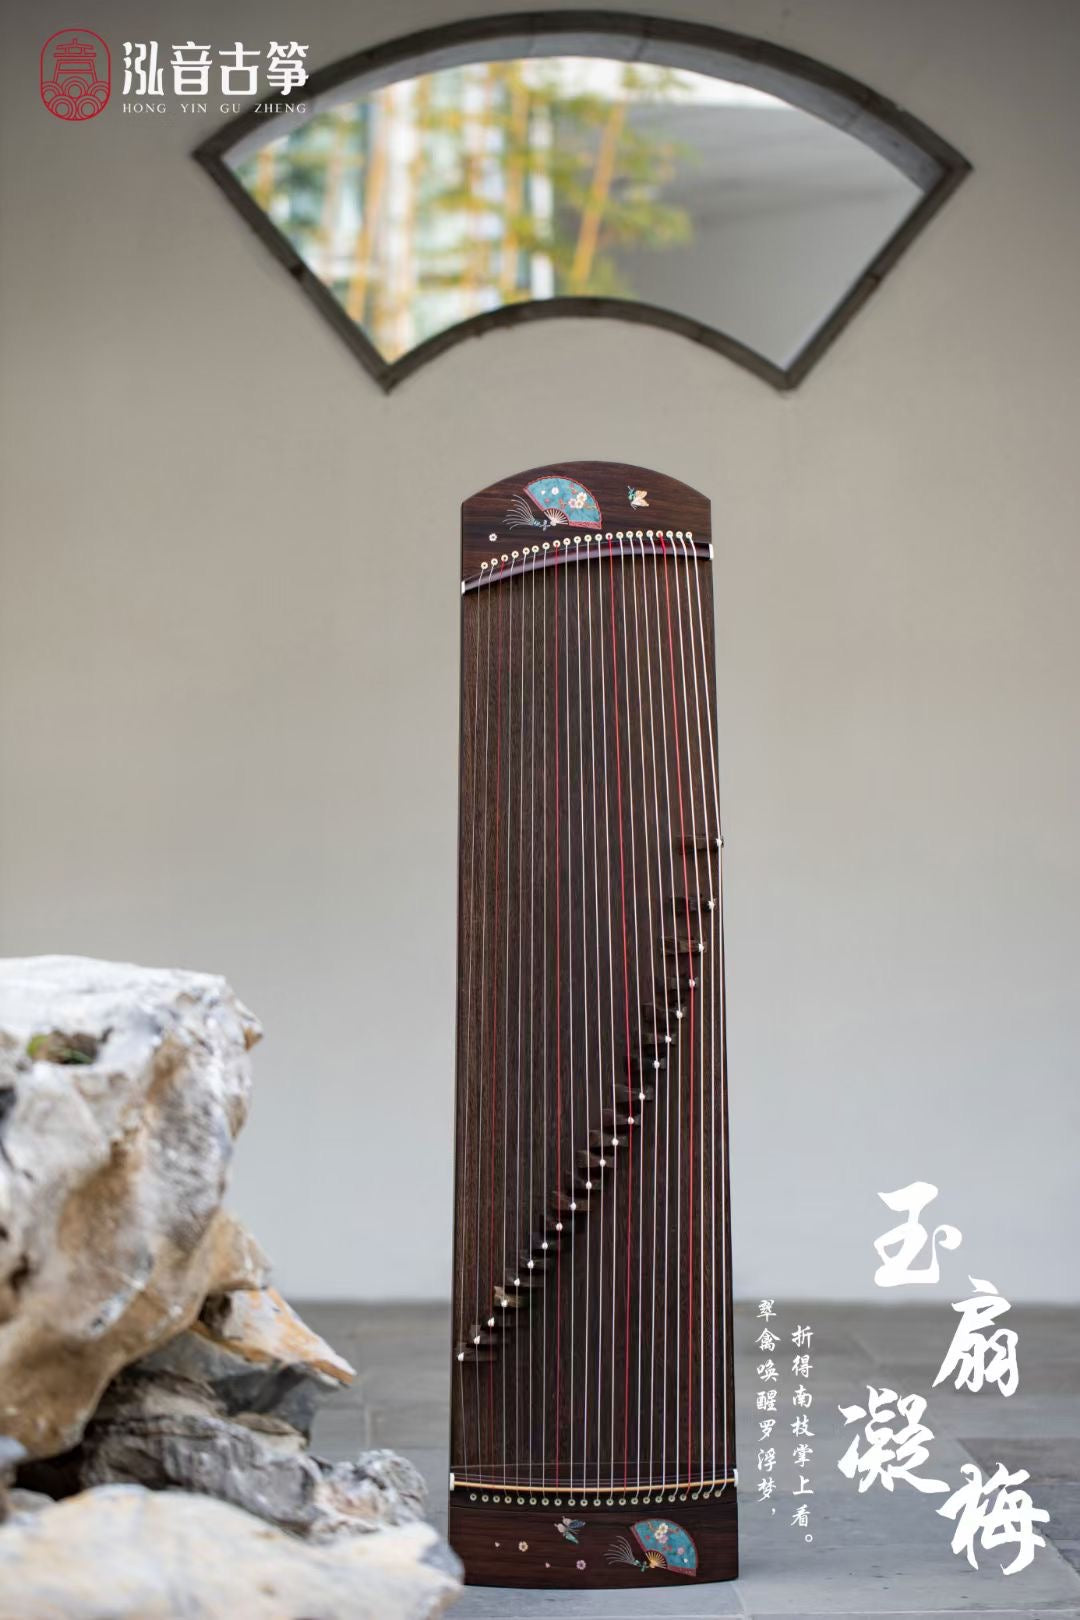 Hongyin 51in Ebony Guzheng “Yu Shan Ning Mei” at Guzheng World 